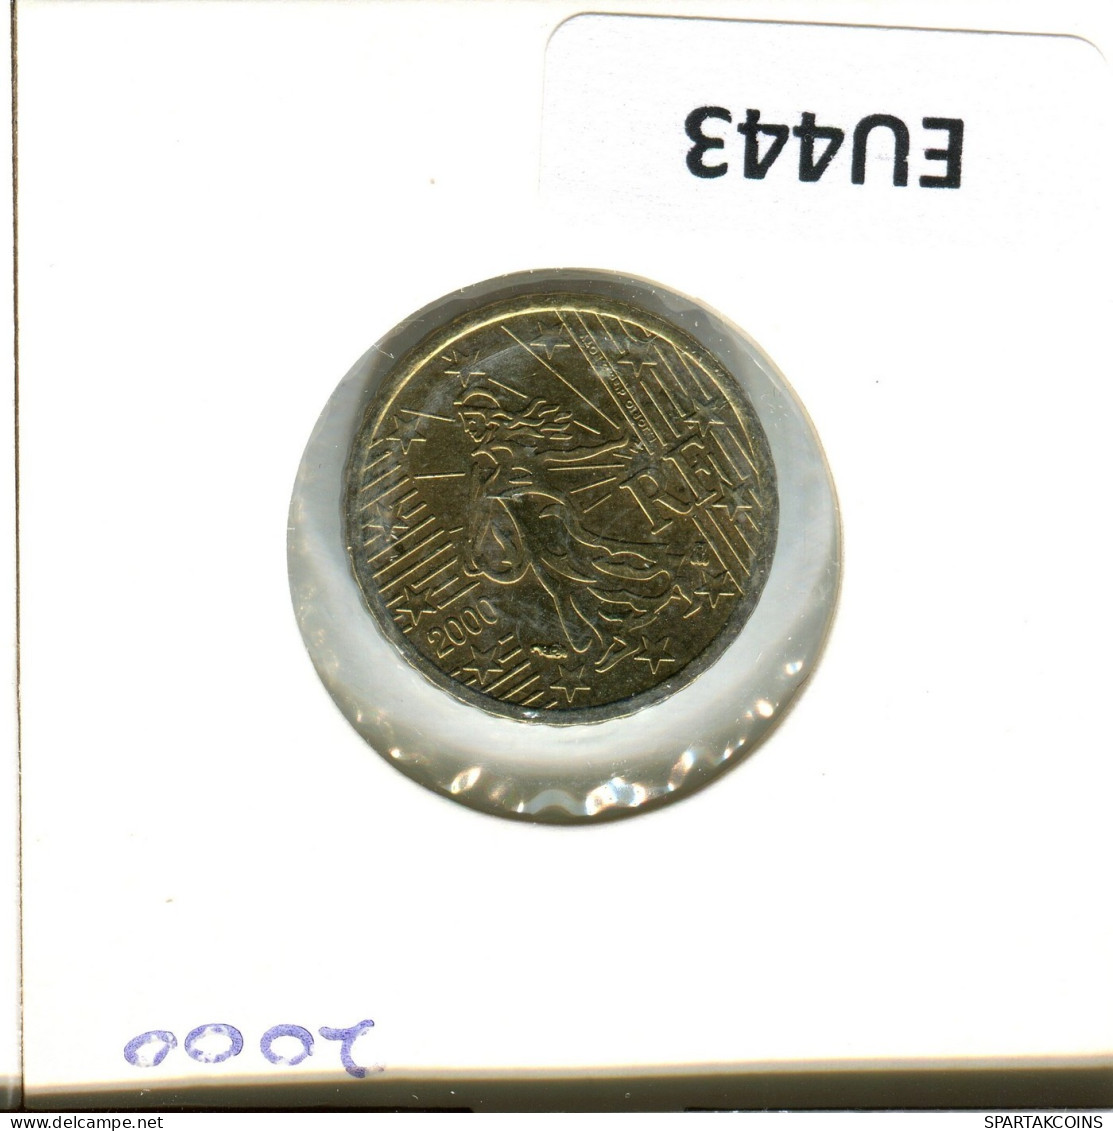 10 EURO CENTS 2000 FRANCE Coin Coin #EU443.U.A - France